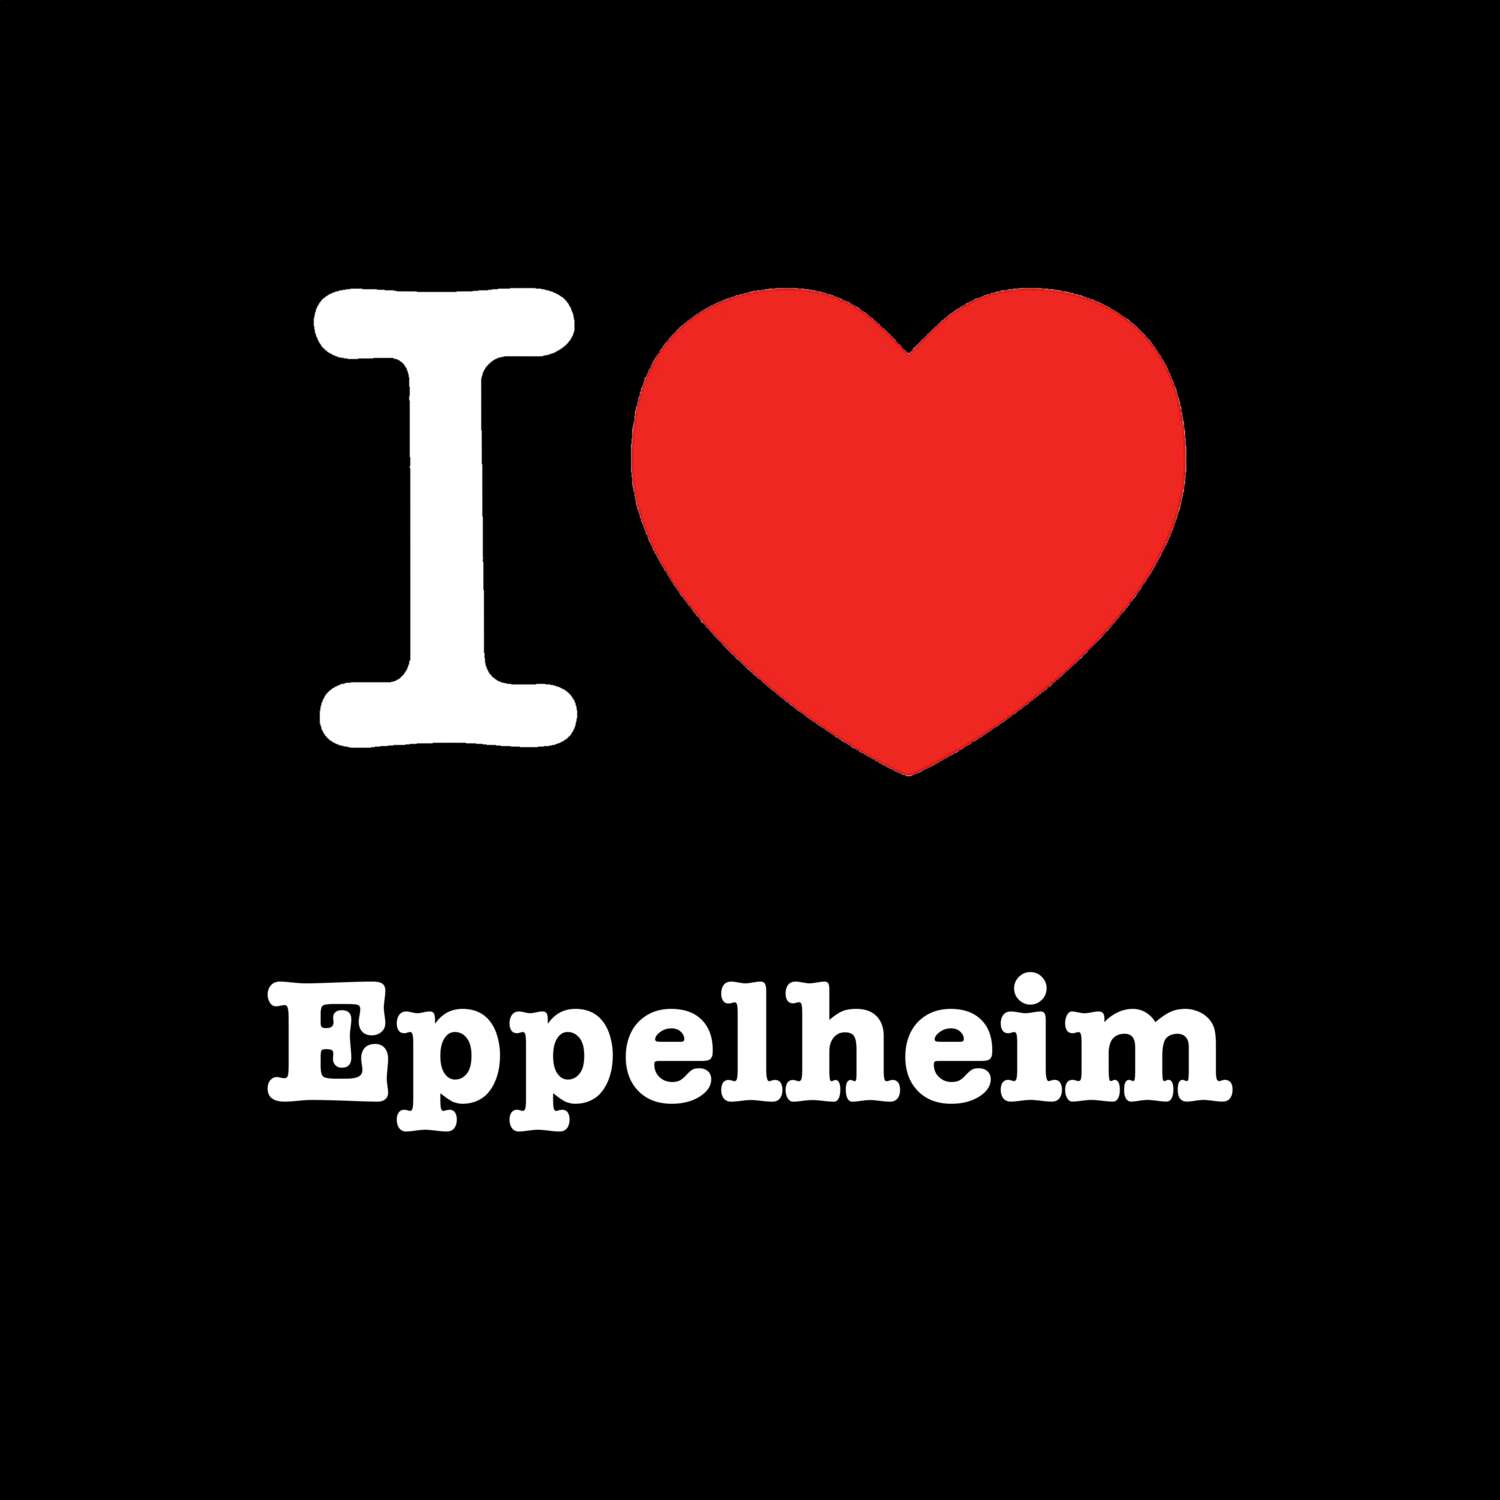 Eppelheim T-Shirt »I love«